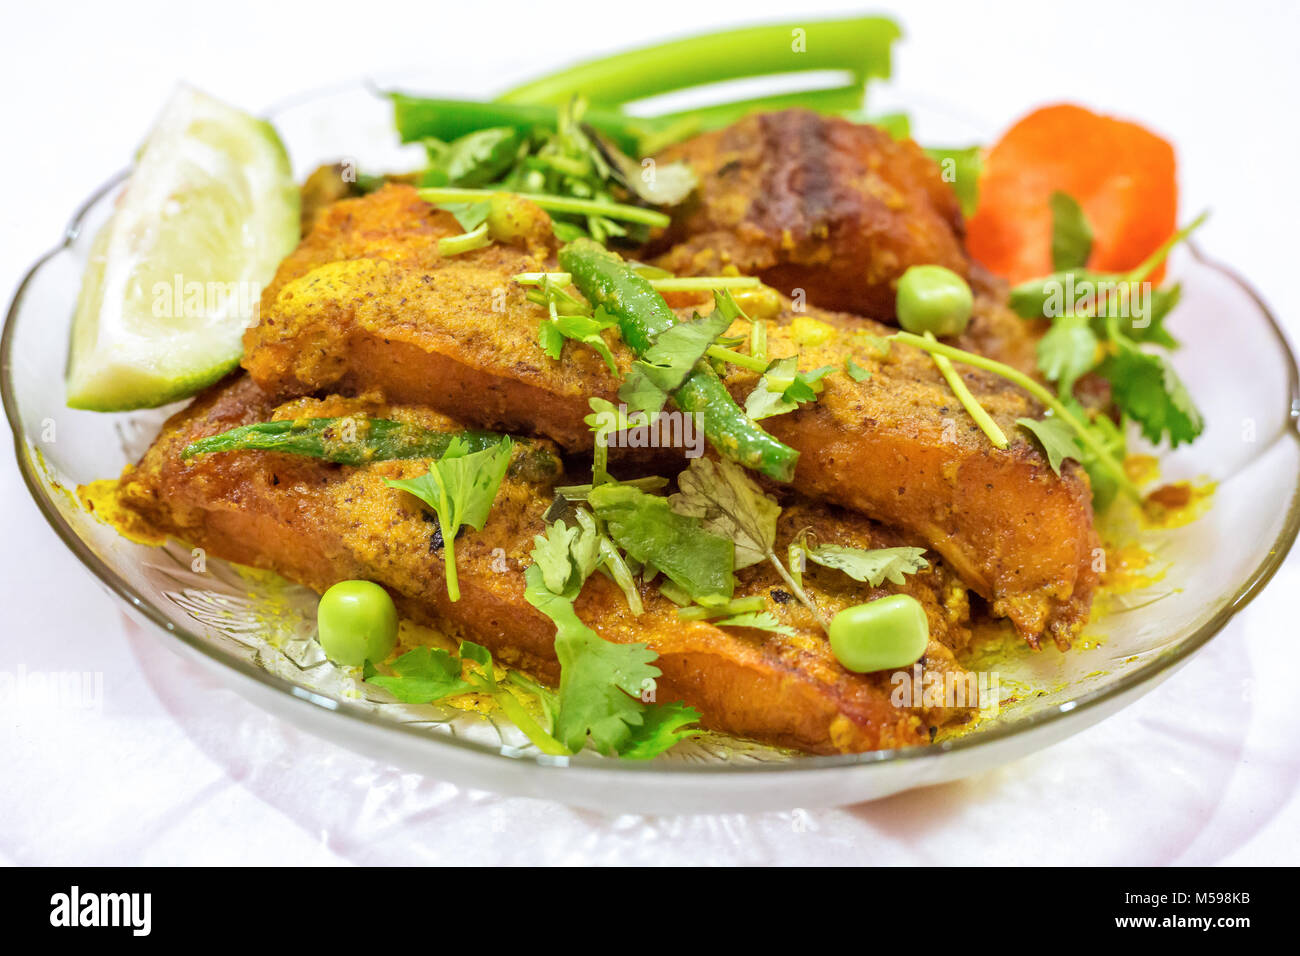 Würzige rohu Fisch masala Curry mit Koriander, Bohnen, Karotten, grüne Chilischote und Zitronenscheibe garniert. Rohu Fisch ist eine beliebte nicht-vegetarische Ernährung in Indien. Stockfoto